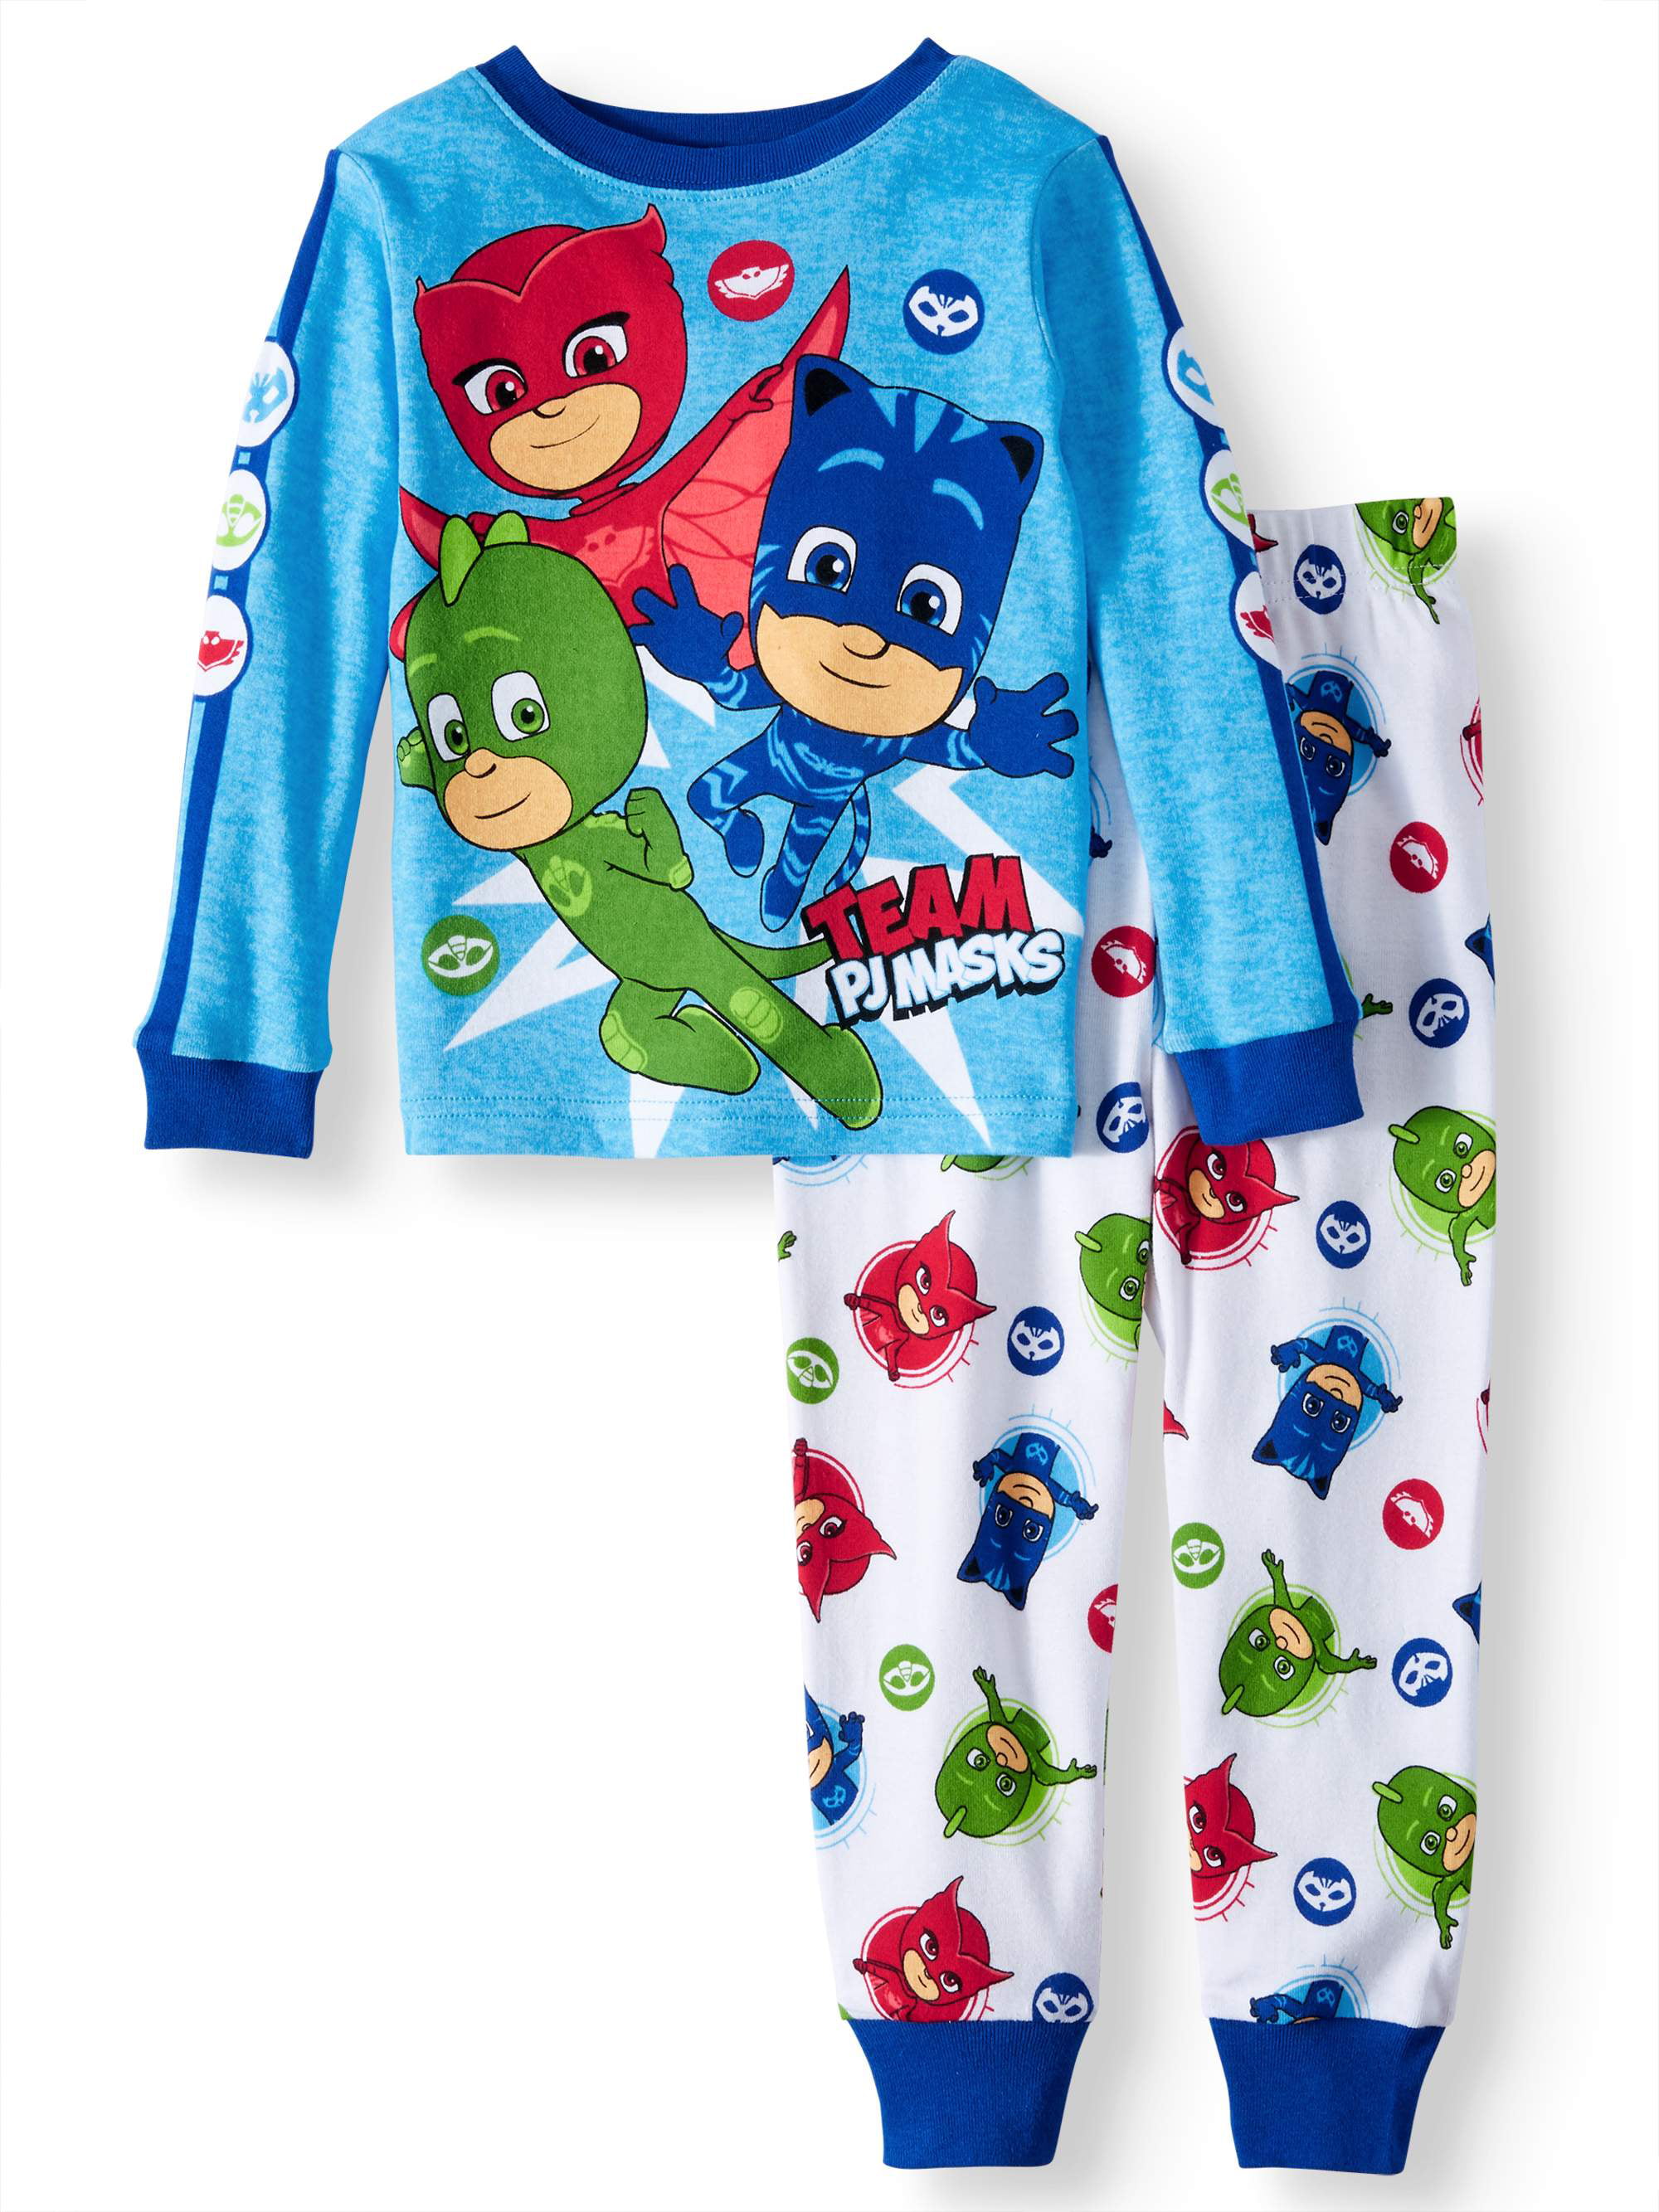 Pj Masks Boys 2-Piece Sleepwear Soft /& Cozy Kids Blue Pajama Set